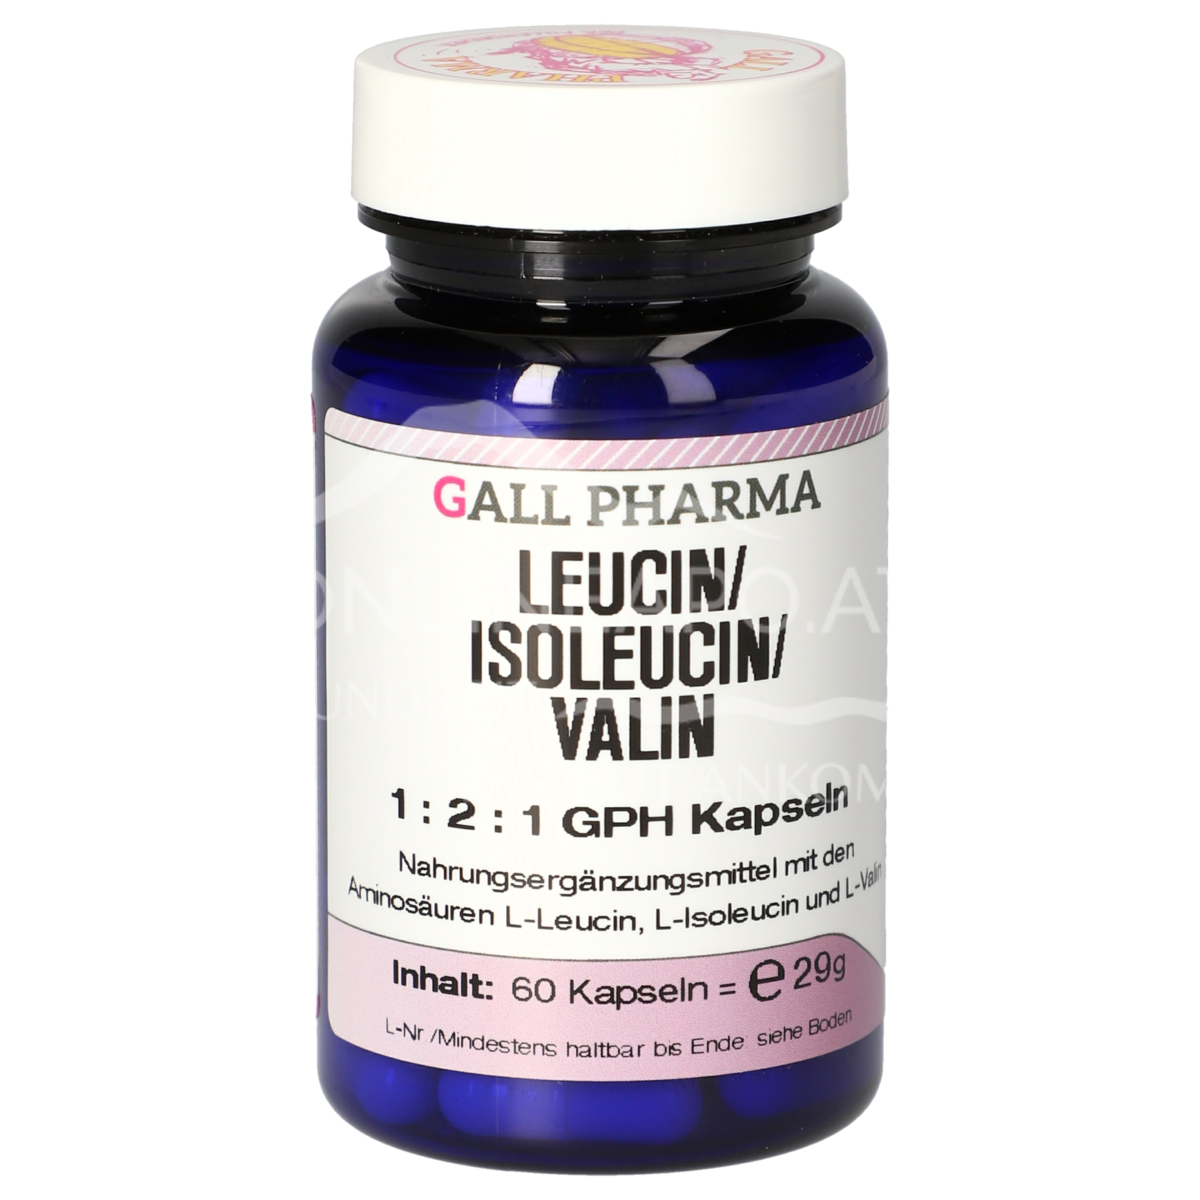 Gall Pharma Leucin / Isoleucin / Valin 1:2:1 Kapseln